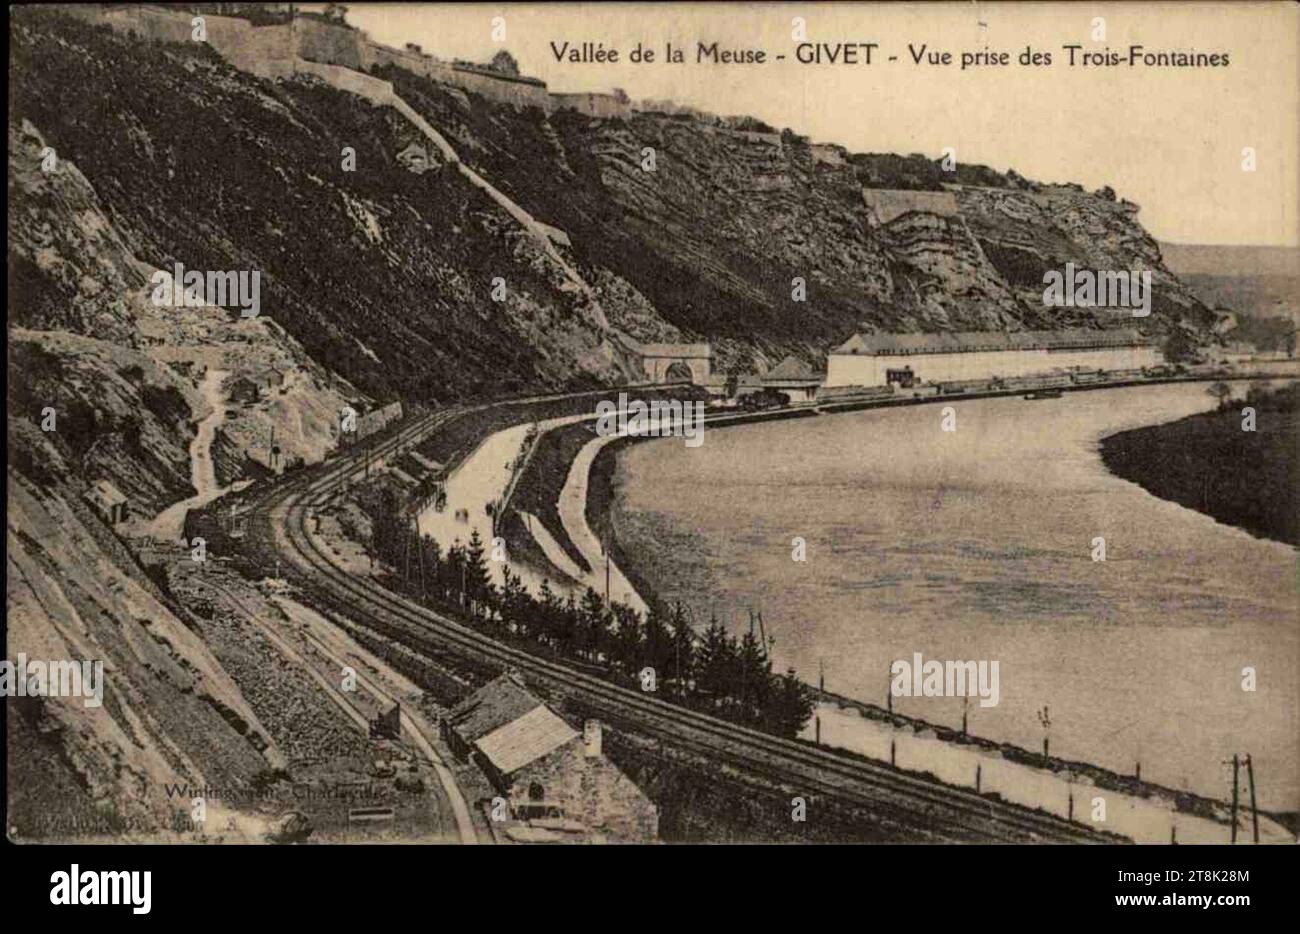 Vallée de la Meuse - Givet - Vue prise des Trois-Fontaines. Stock Photo